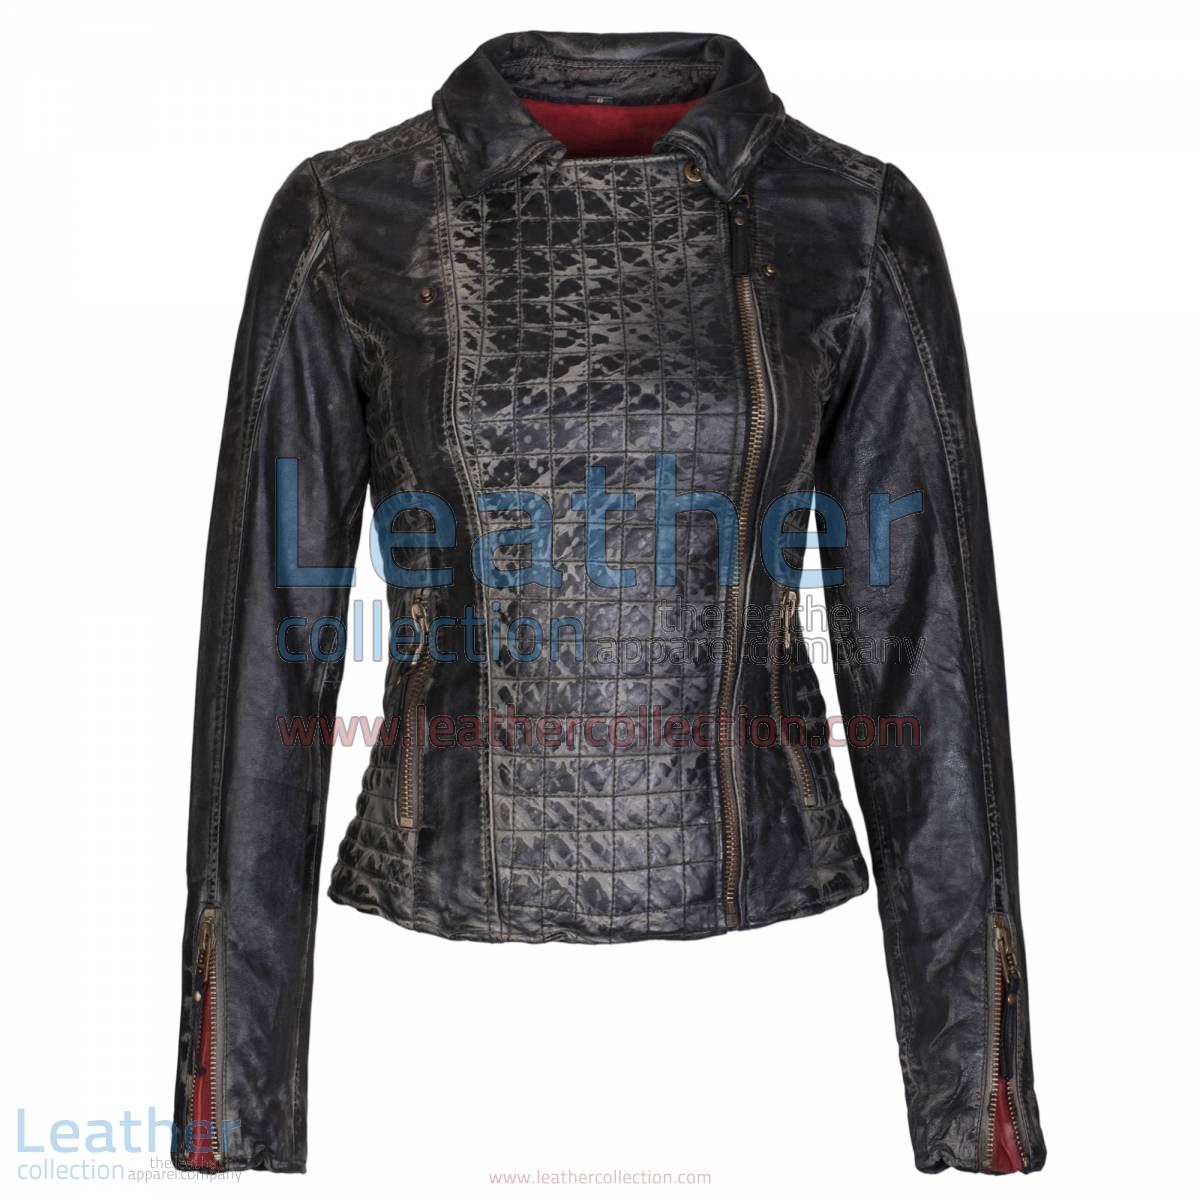 Heritage Ladies Black Fashion Leather Jacket | heritage jacket